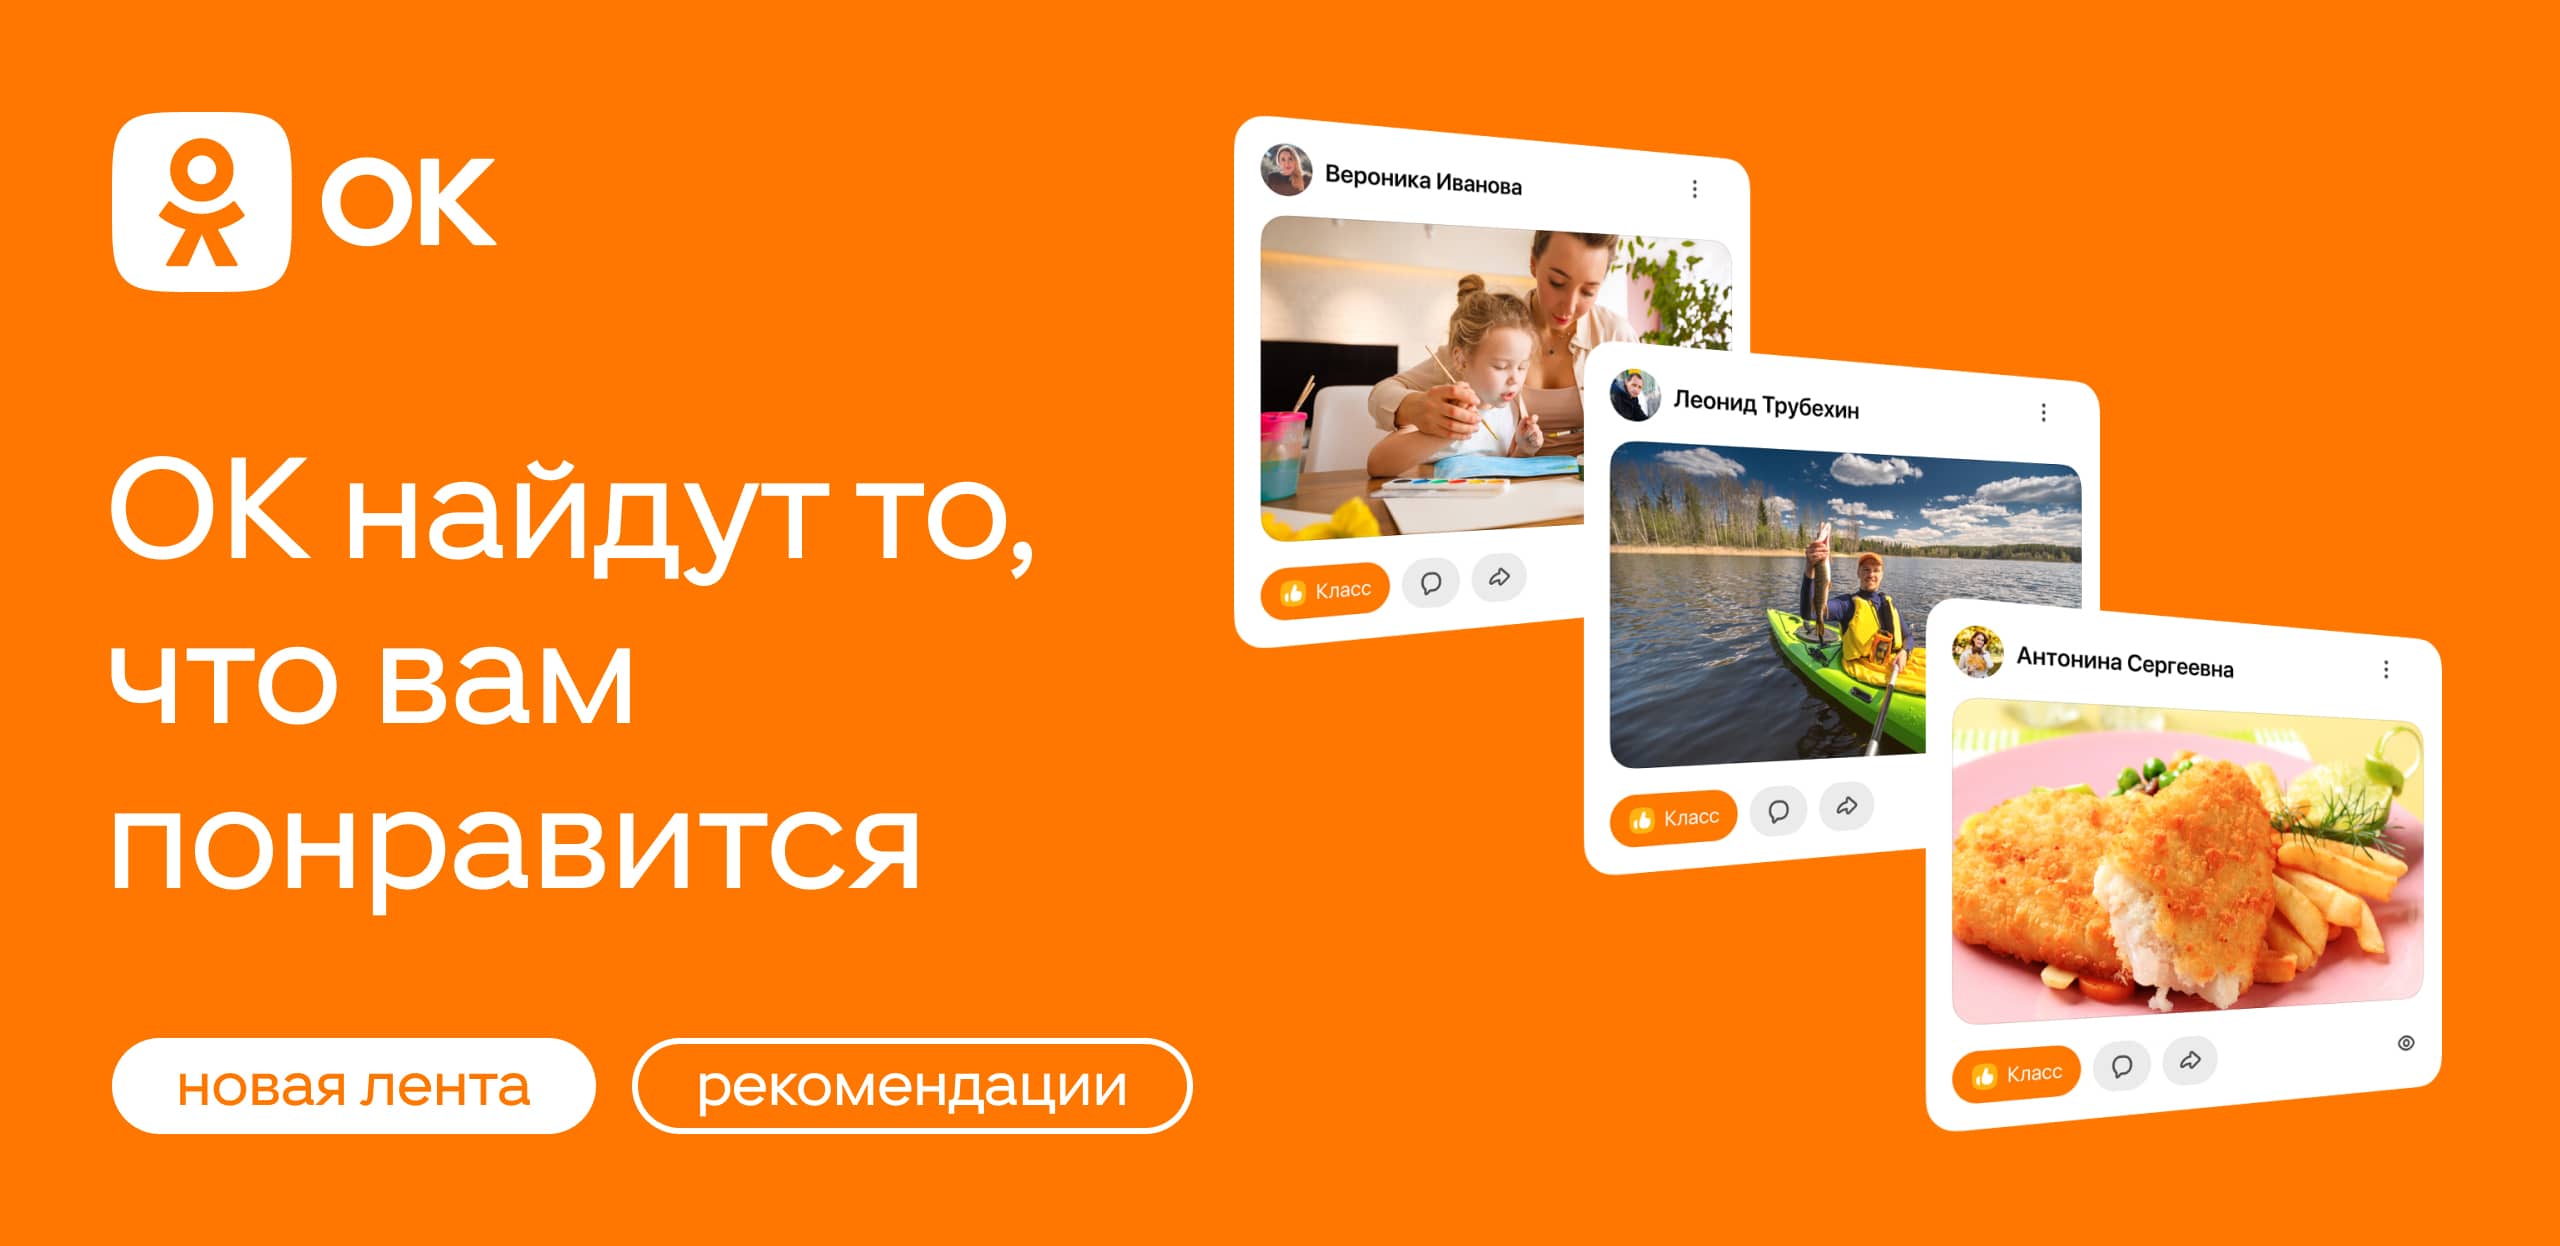 Большое обновление Одноклассников: соцсеть перезапустила ленту новостей